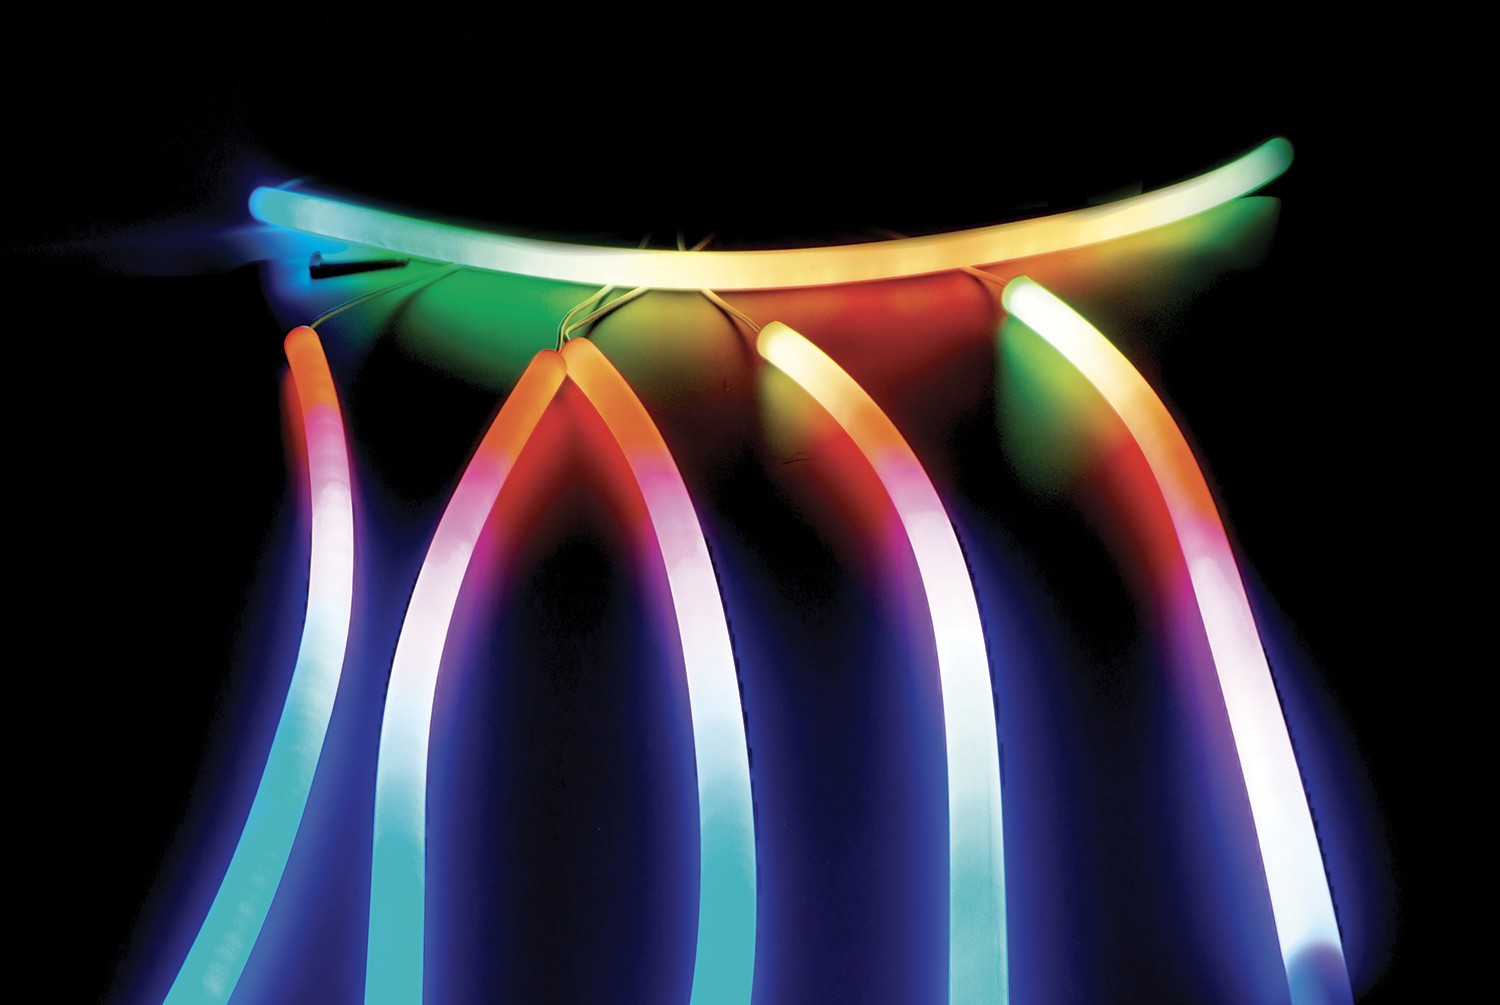 Strisce LED flessibili al silicone con flusso luminoso a colori e circolare  a 360° - Staff Editoriale